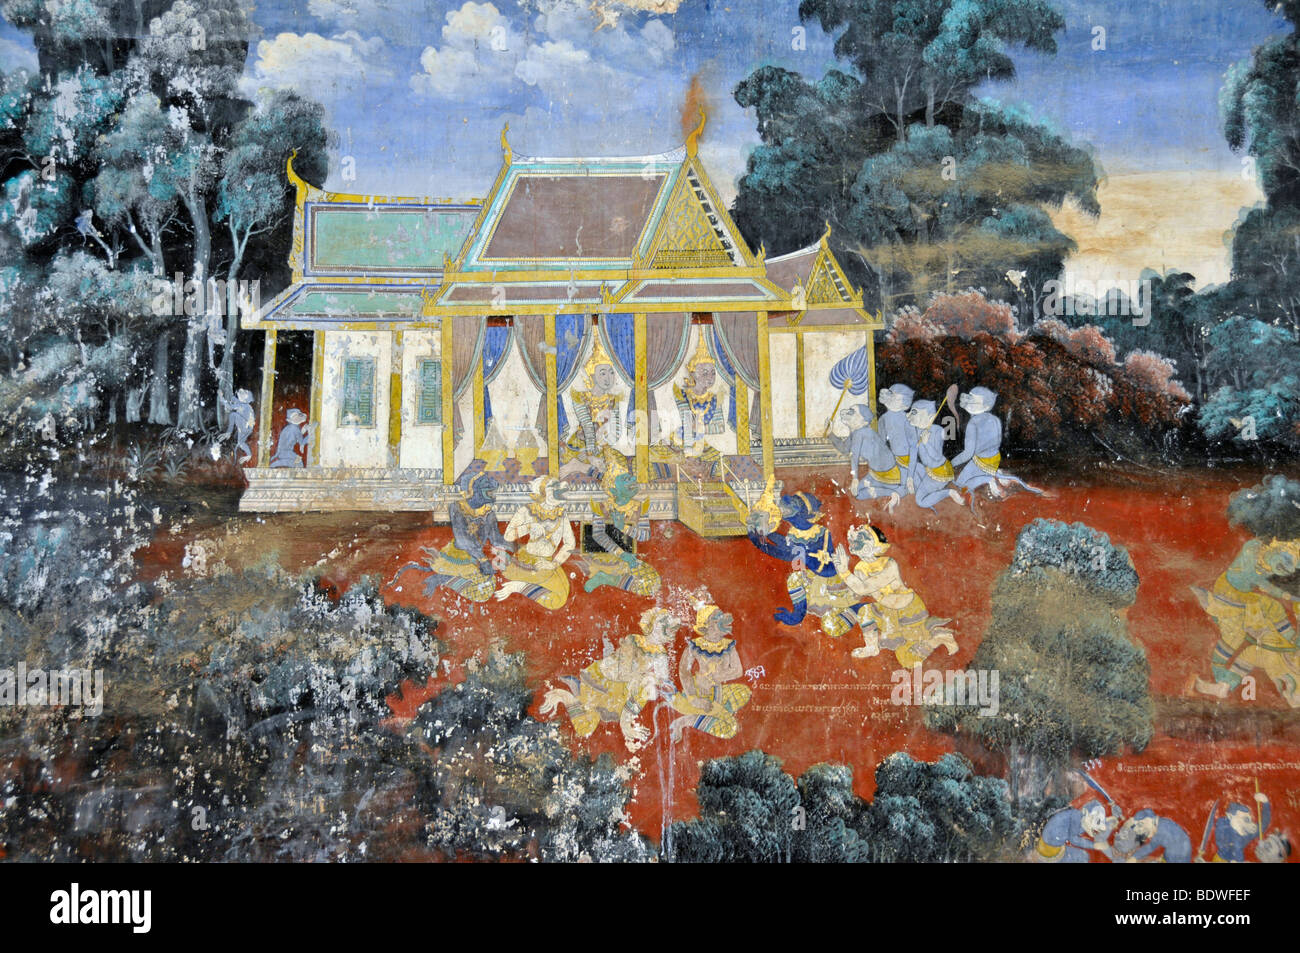 Bilder von der hinduistischen Ramayana Epos, ab ca. 1900, Königspalast, Phnom Penh, Kambodscha, Asien Stockfoto